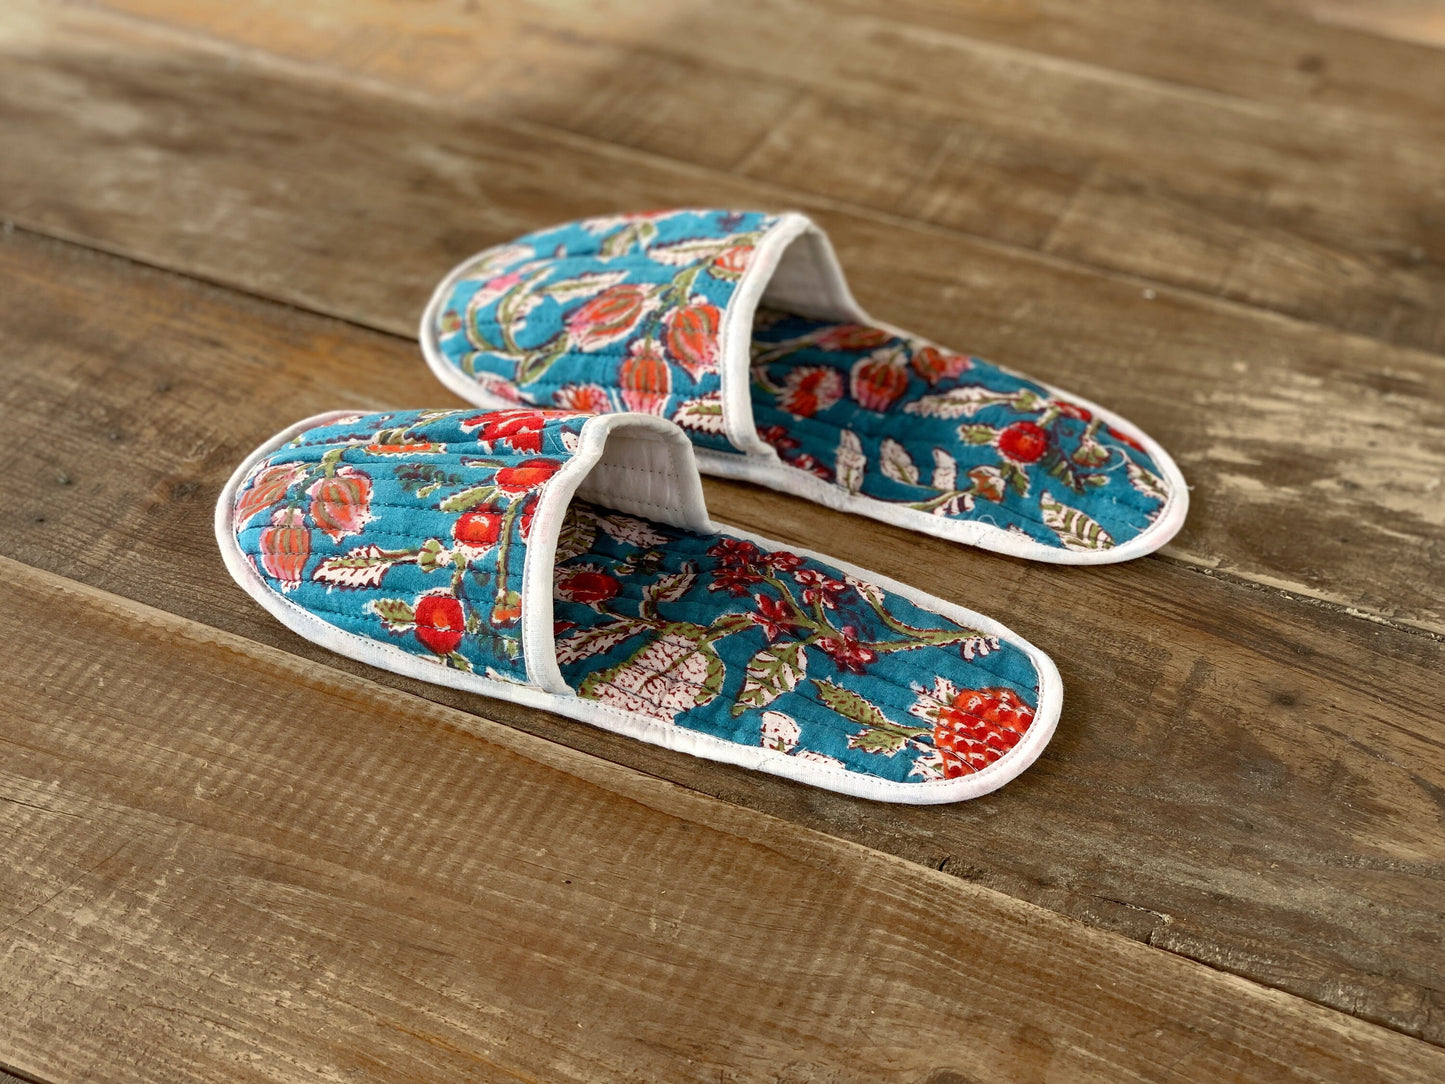 Zapatillas de viaje enguatadas con bolsa a juego · Algodón puro estampado block print en India · Zapatillas de baño ducha · Azul flor rosa